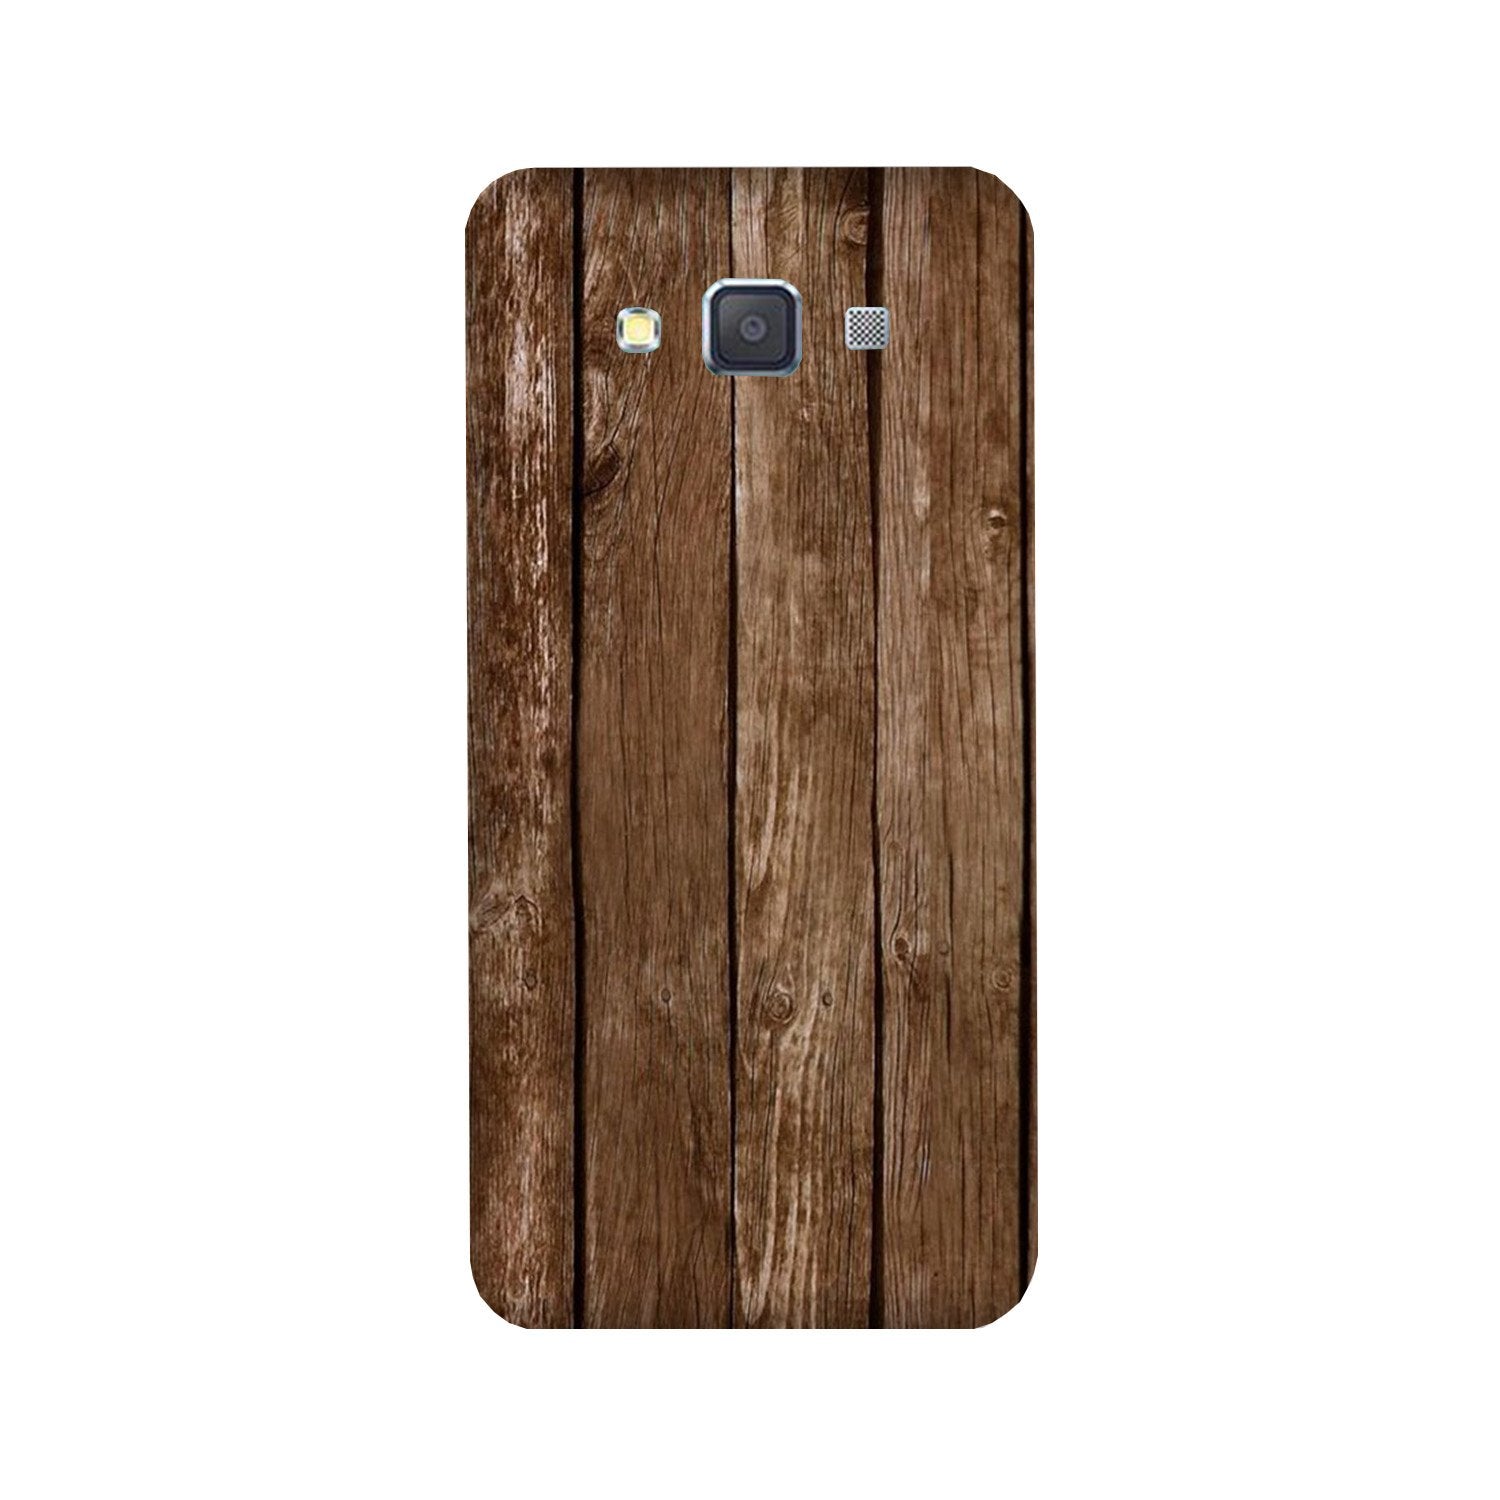 Wooden Look Case for Galaxy E7(Design - 112)